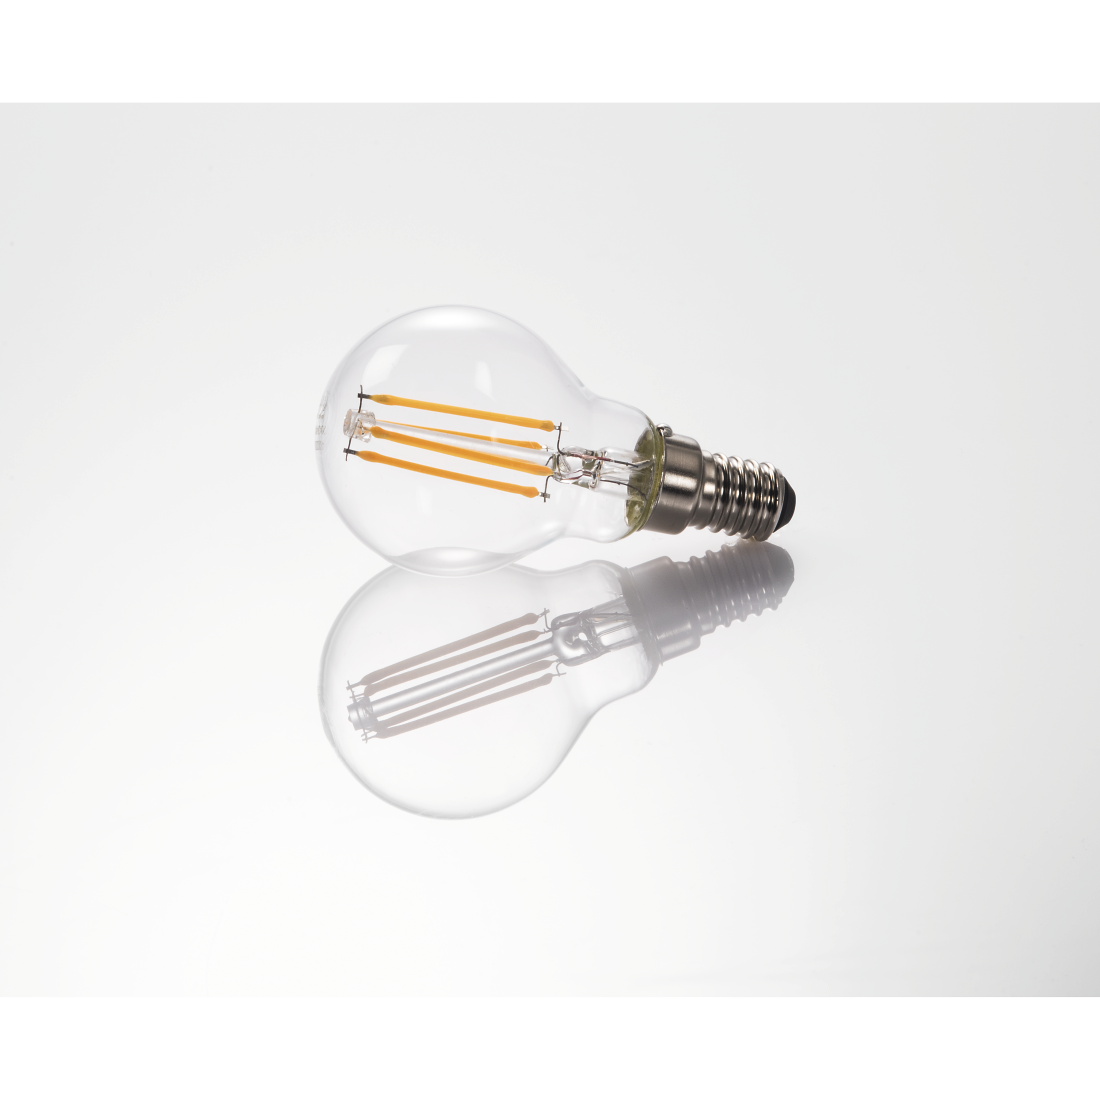 abx3 High-Res Image 3 - Xavax, Ampoule filament LED, E14, 470lm remp. 40W, amp. sphér., blc chd, rég.